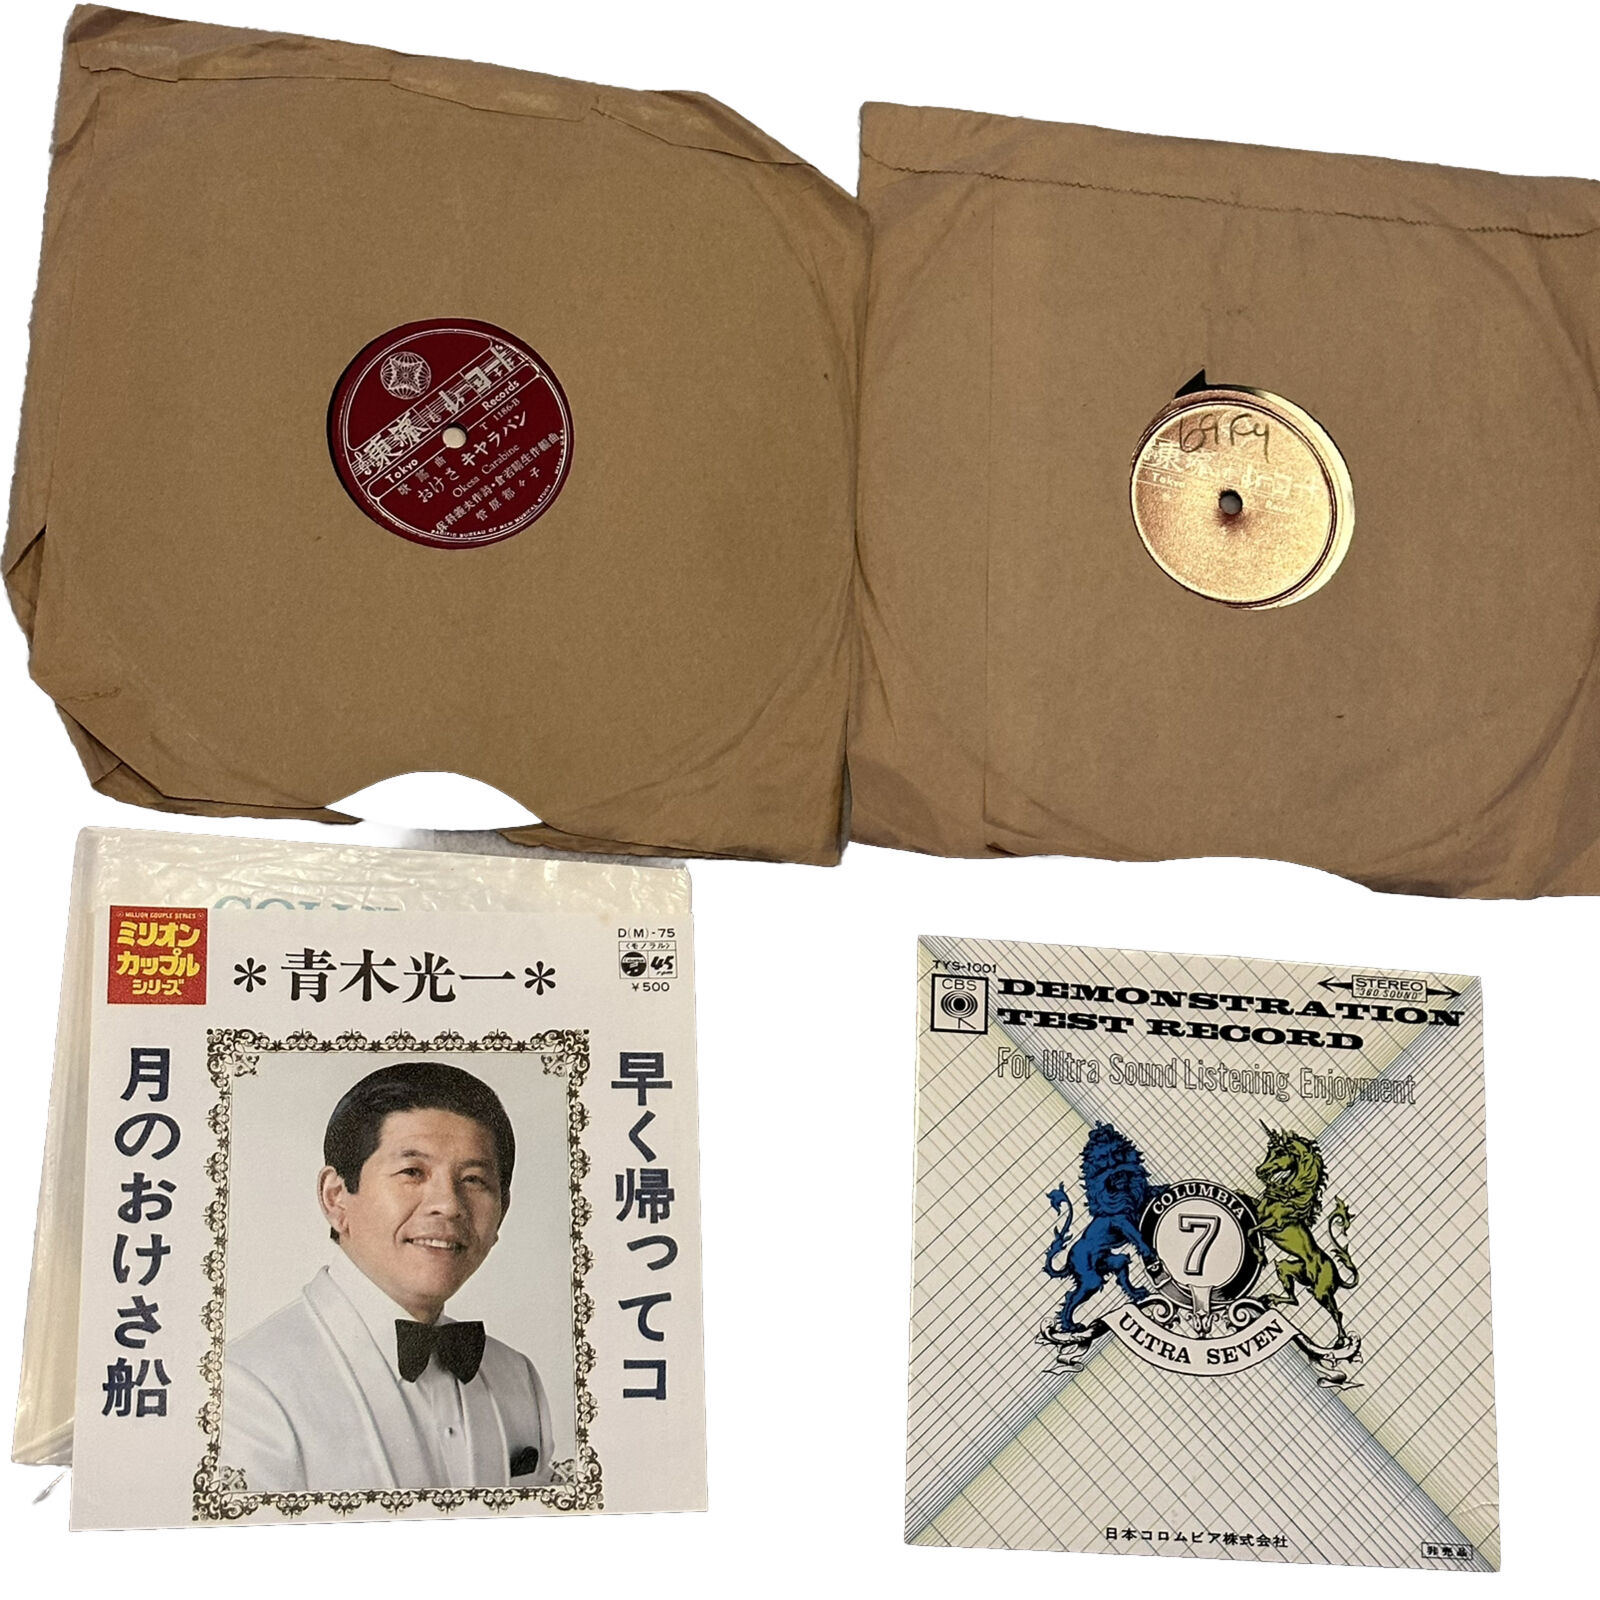 Japanese Vinyl Music 45\'s Lot of 3  Vintage in cardboard sleeves, 1950\'s-60\'s